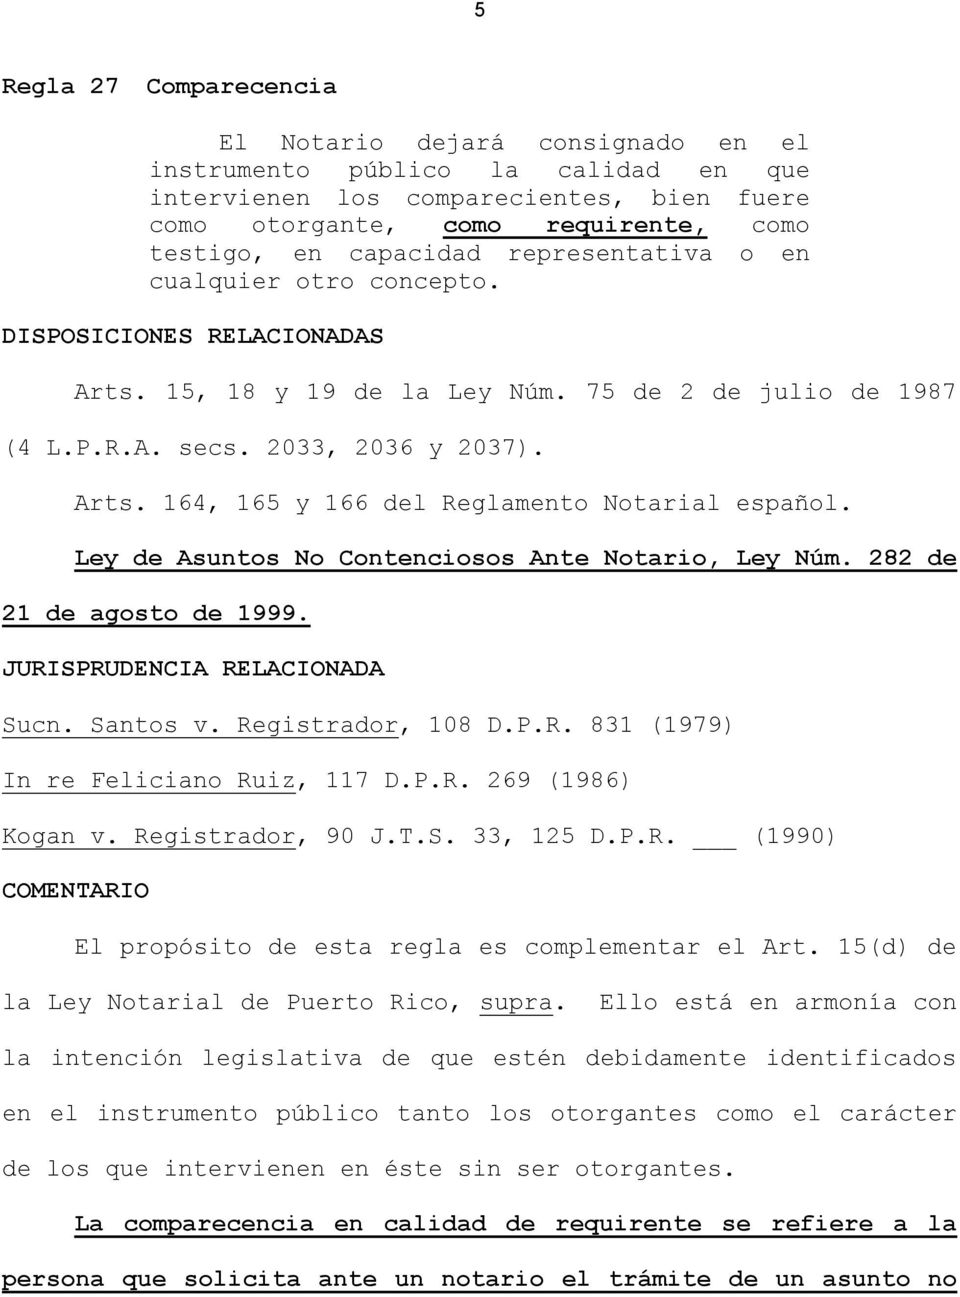 Ley de Asuntos No Contenciosos Ante Notario, Ley Núm. 282 de 21 de agosto de 1999. JURISPRUDENCIA RELACIONADA Sucn. Santos v. Registrador, 108 D.P.R. 831 (1979) In re Feliciano Ruiz, 117 D.P.R. 269 (1986) Kogan v.